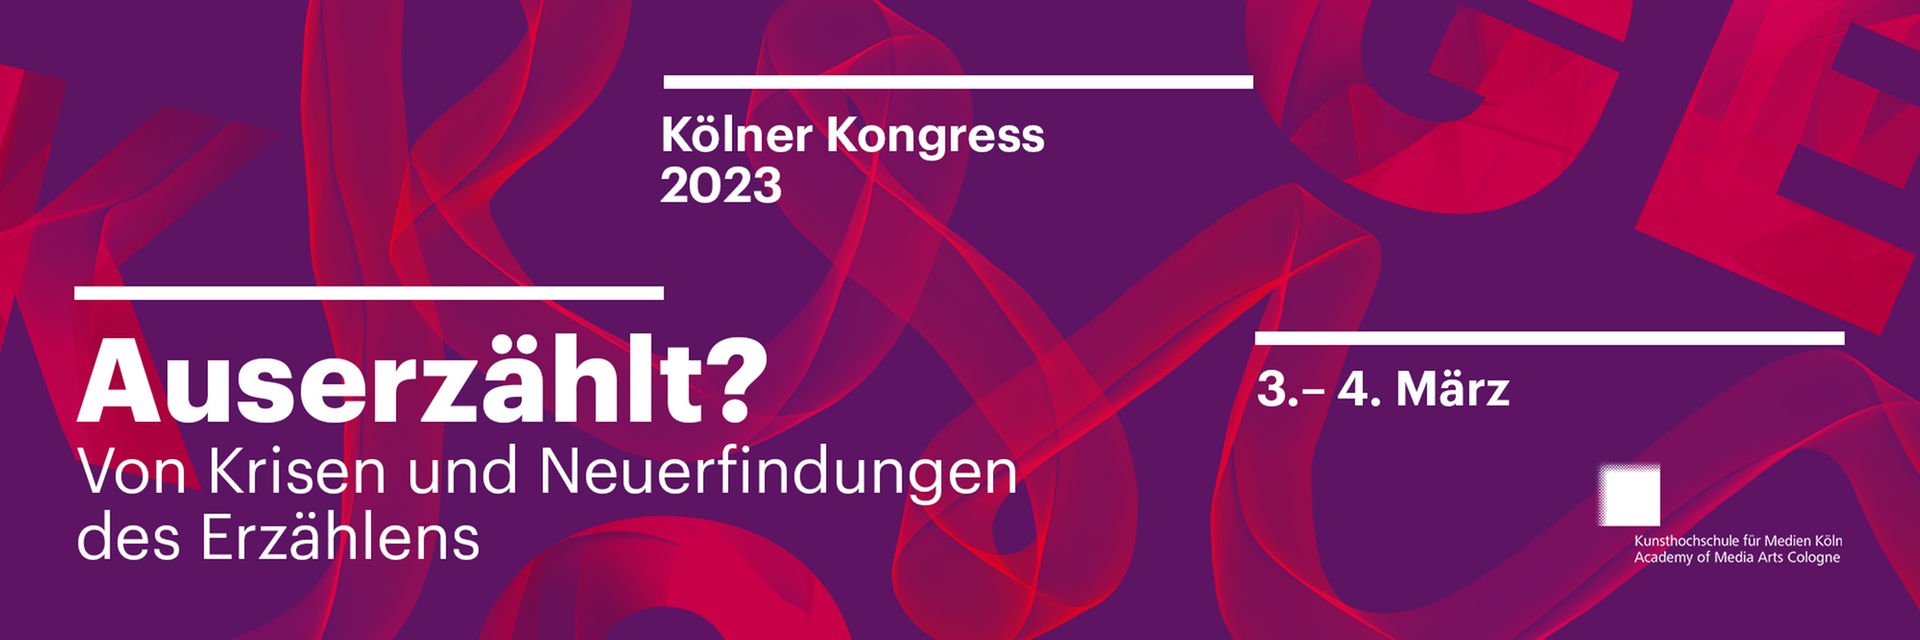 Kölner Kongress 2023: Auserzählt? Von Krisen und Neuerfindungen des Erzählens. Eine Veranstaltung von Deutschlandfunk und Deutschlandfunk Kultur am 3. und 4. März 2023